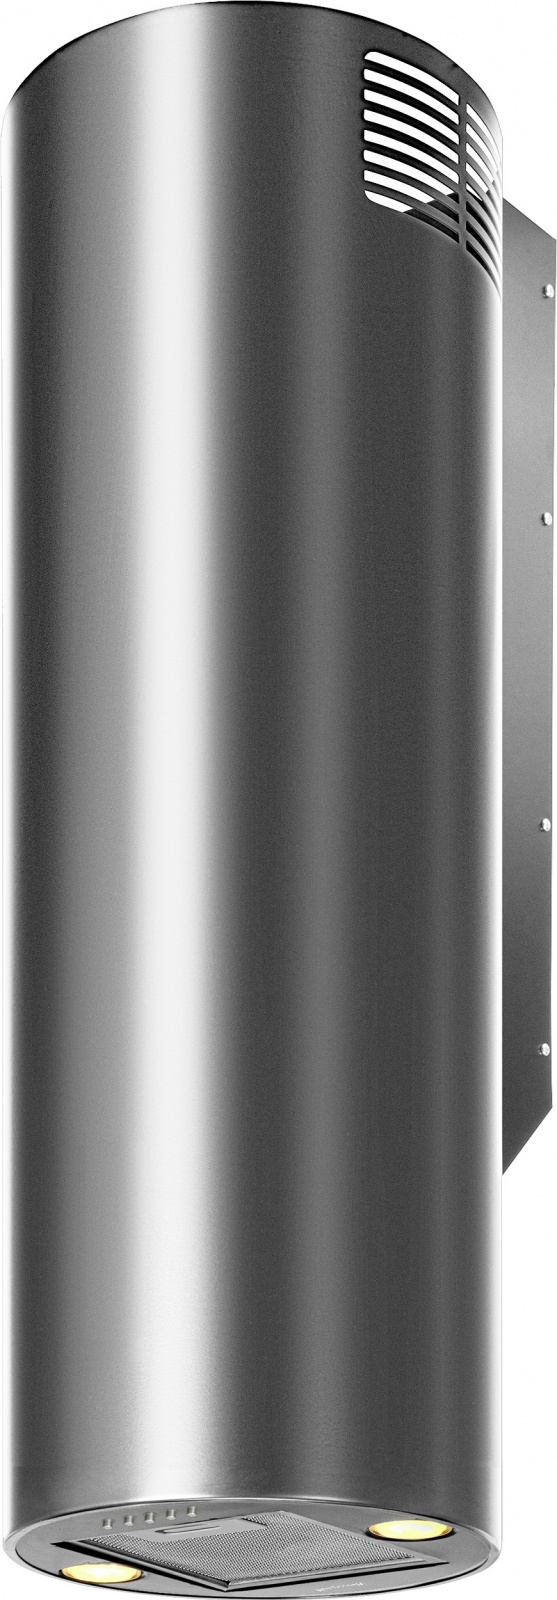 Вытяжка Weissgauff TUBUS 900 PB IX цилиндрическая пристенная вытяжка weissgauff pipe 900 bl цилиндрическая пристенная